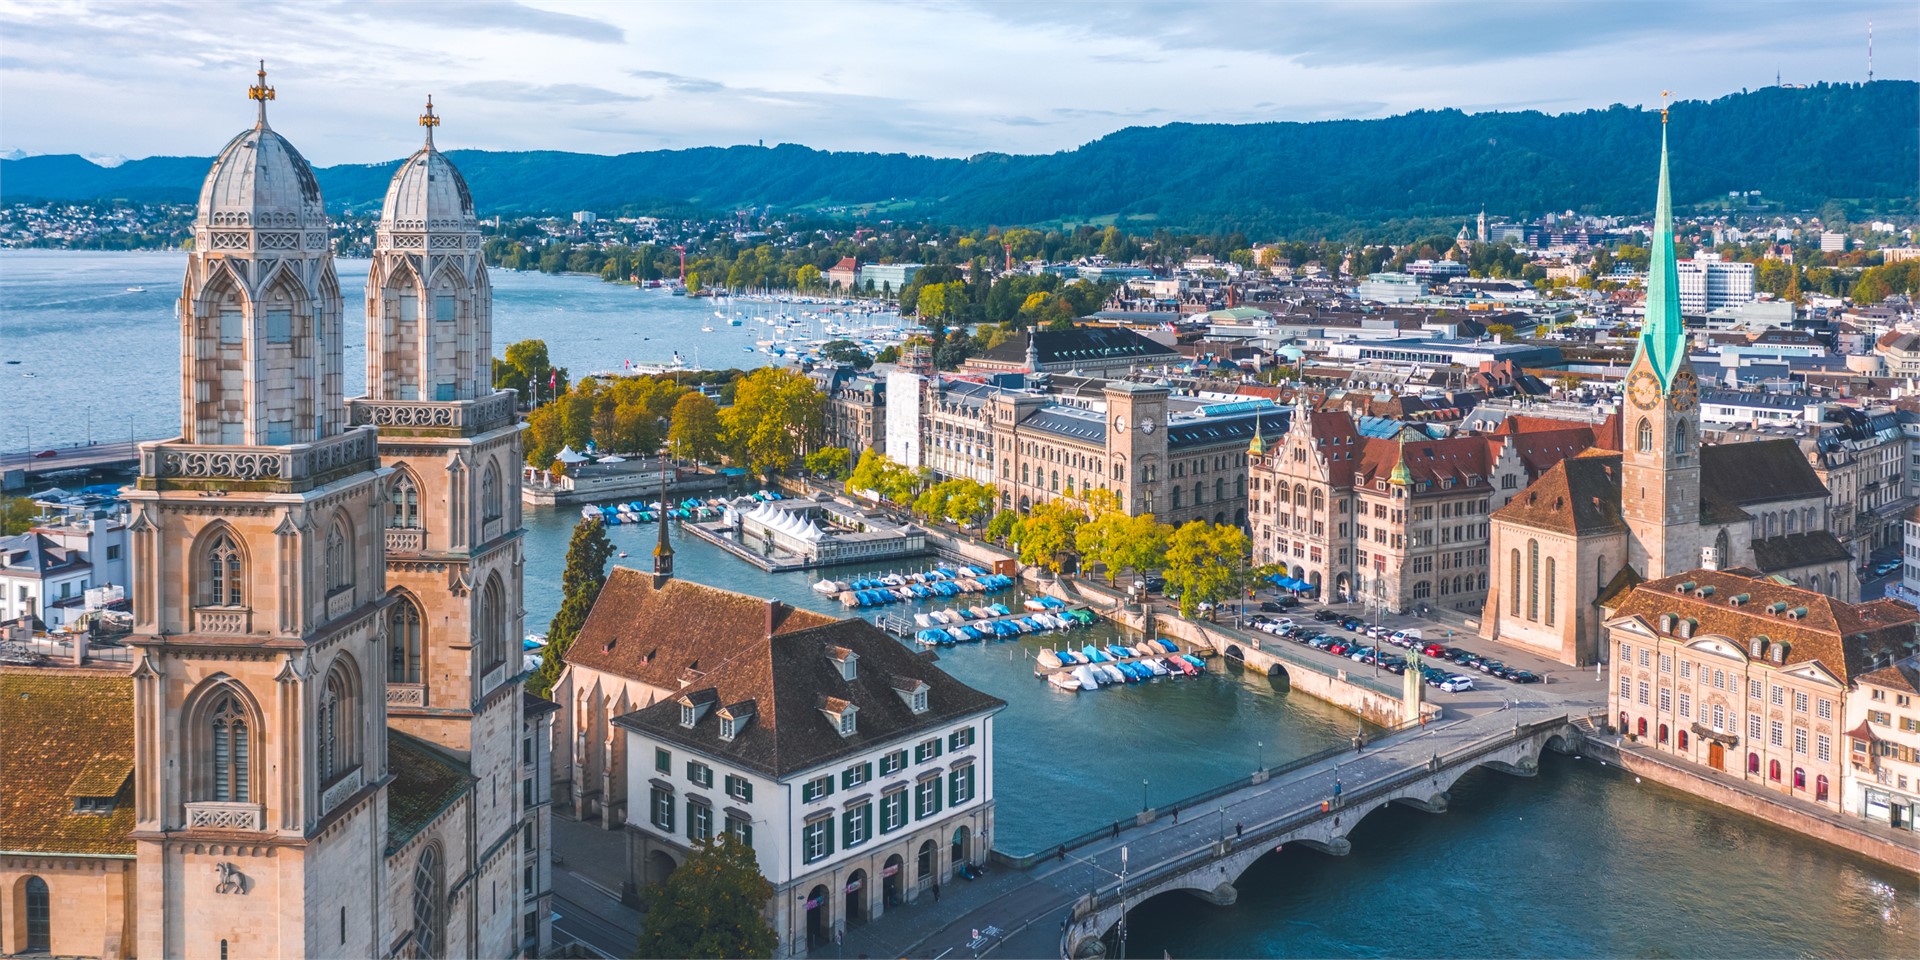 Hotels and accommodation in Zurich, Switzerland
